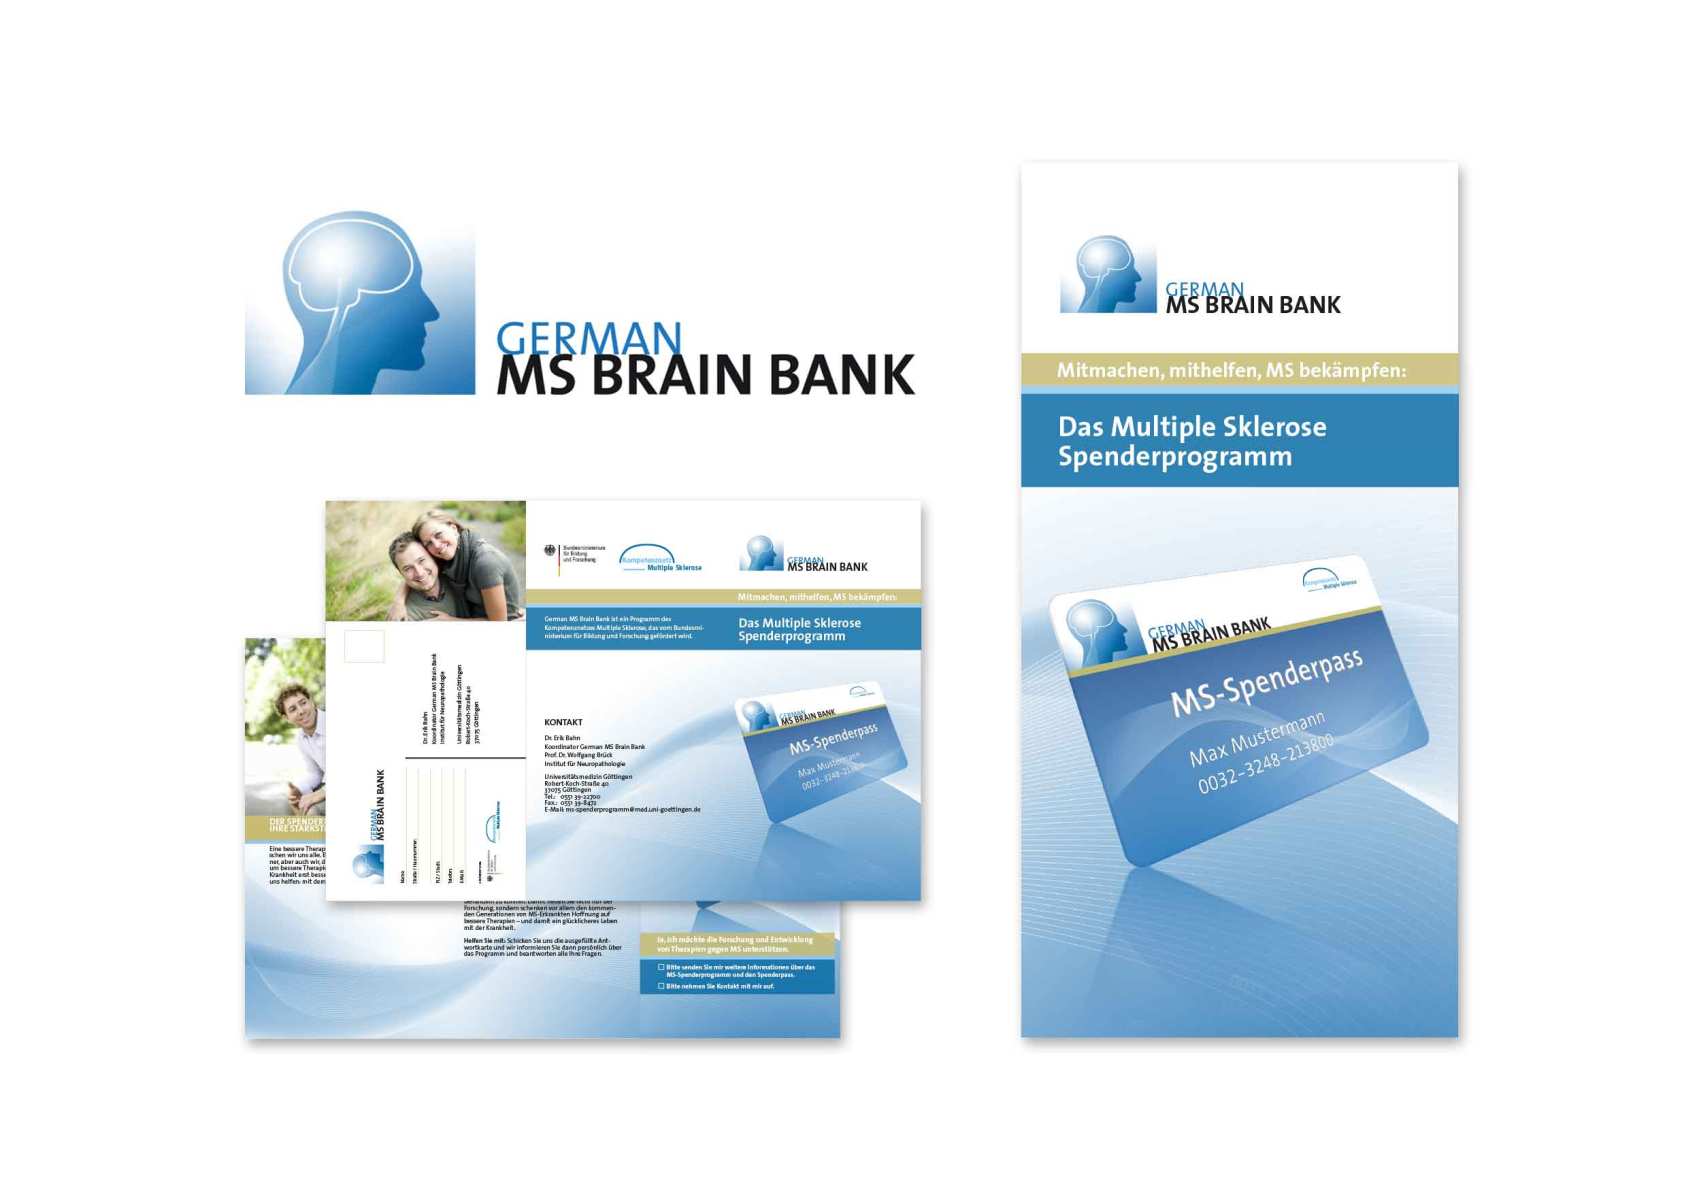 Erscheinungsbildes der German MS Brain Bank